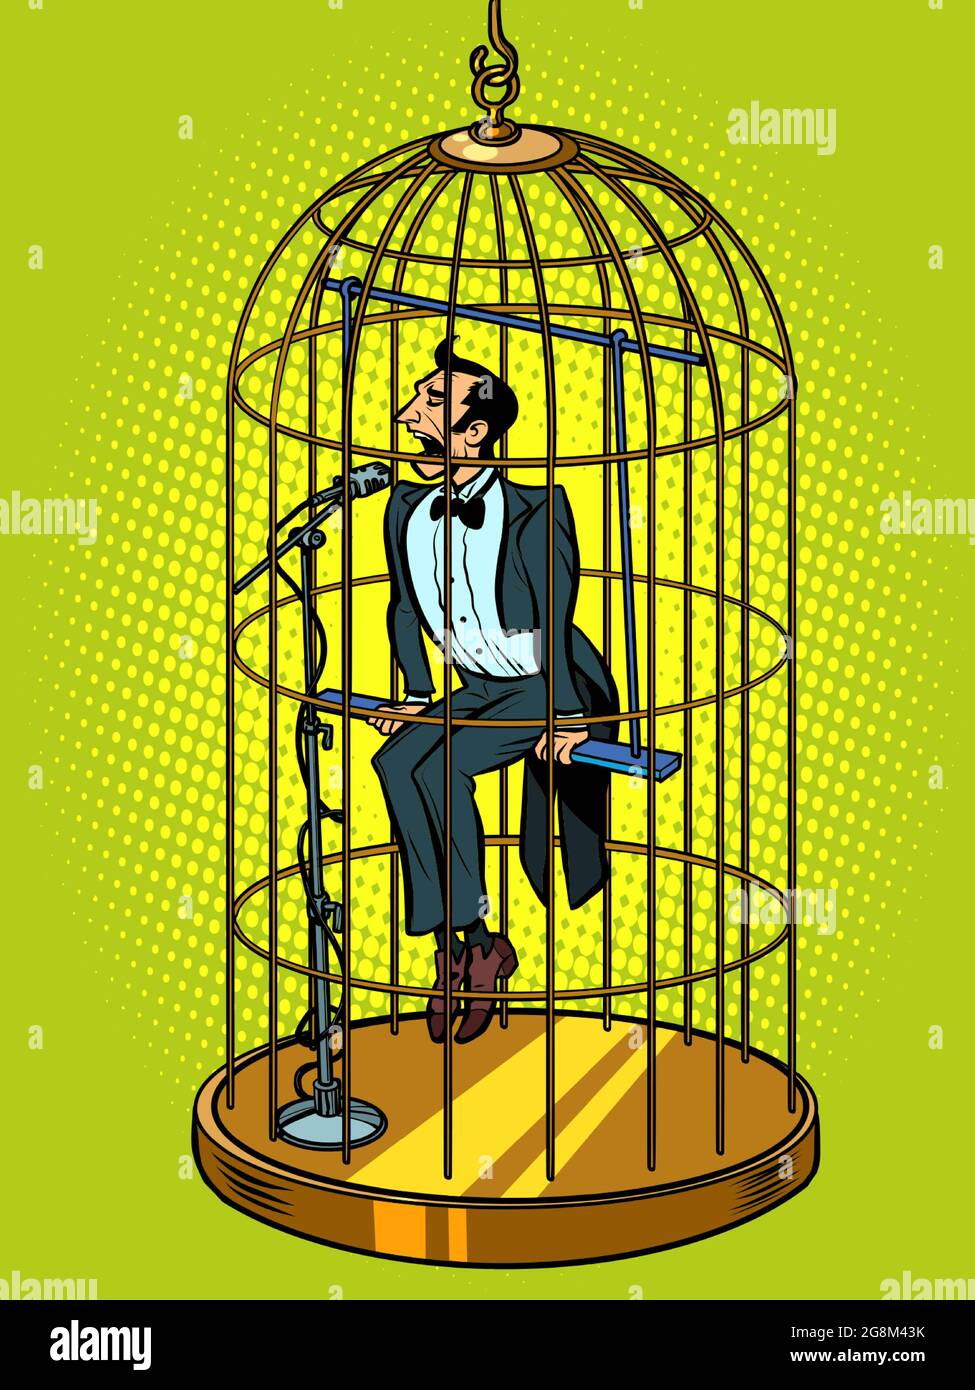 A male tenor singer in a bird cage. Musical voice concept Stock Vector